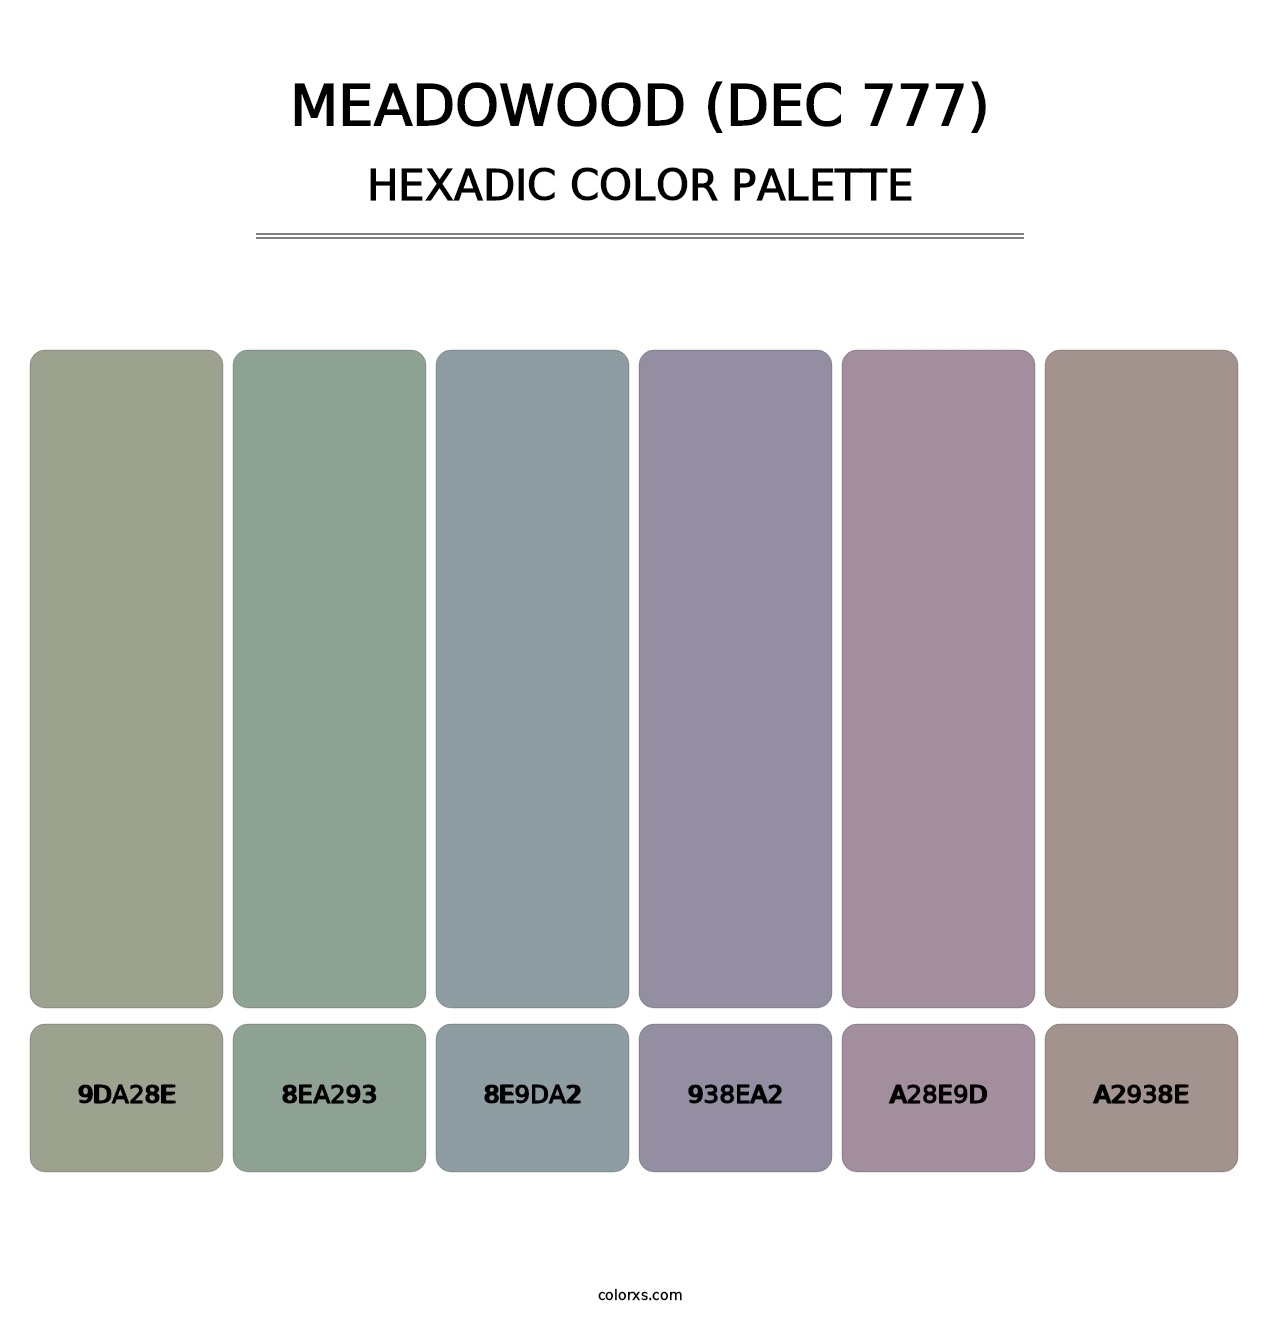 Meadowood (DEC 777) - Hexadic Color Palette